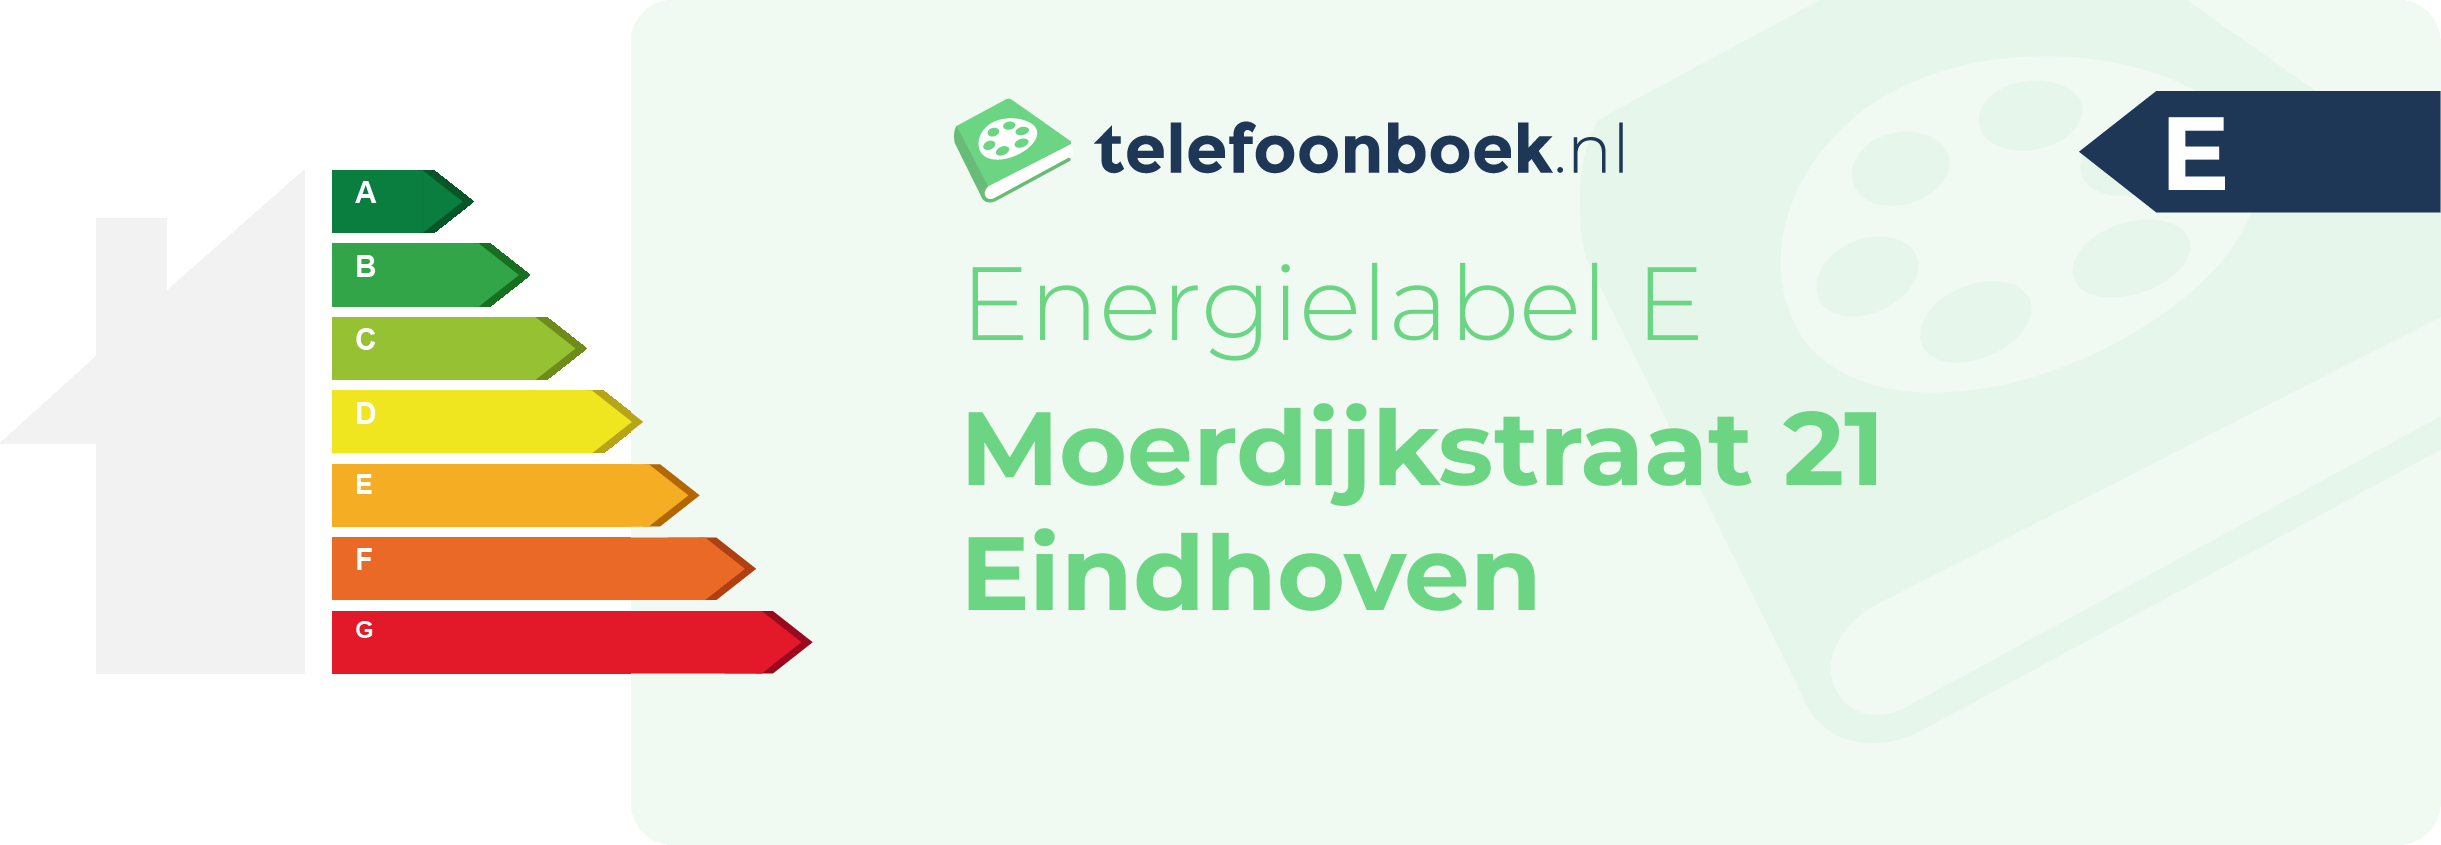 Energielabel Moerdijkstraat 21 Eindhoven